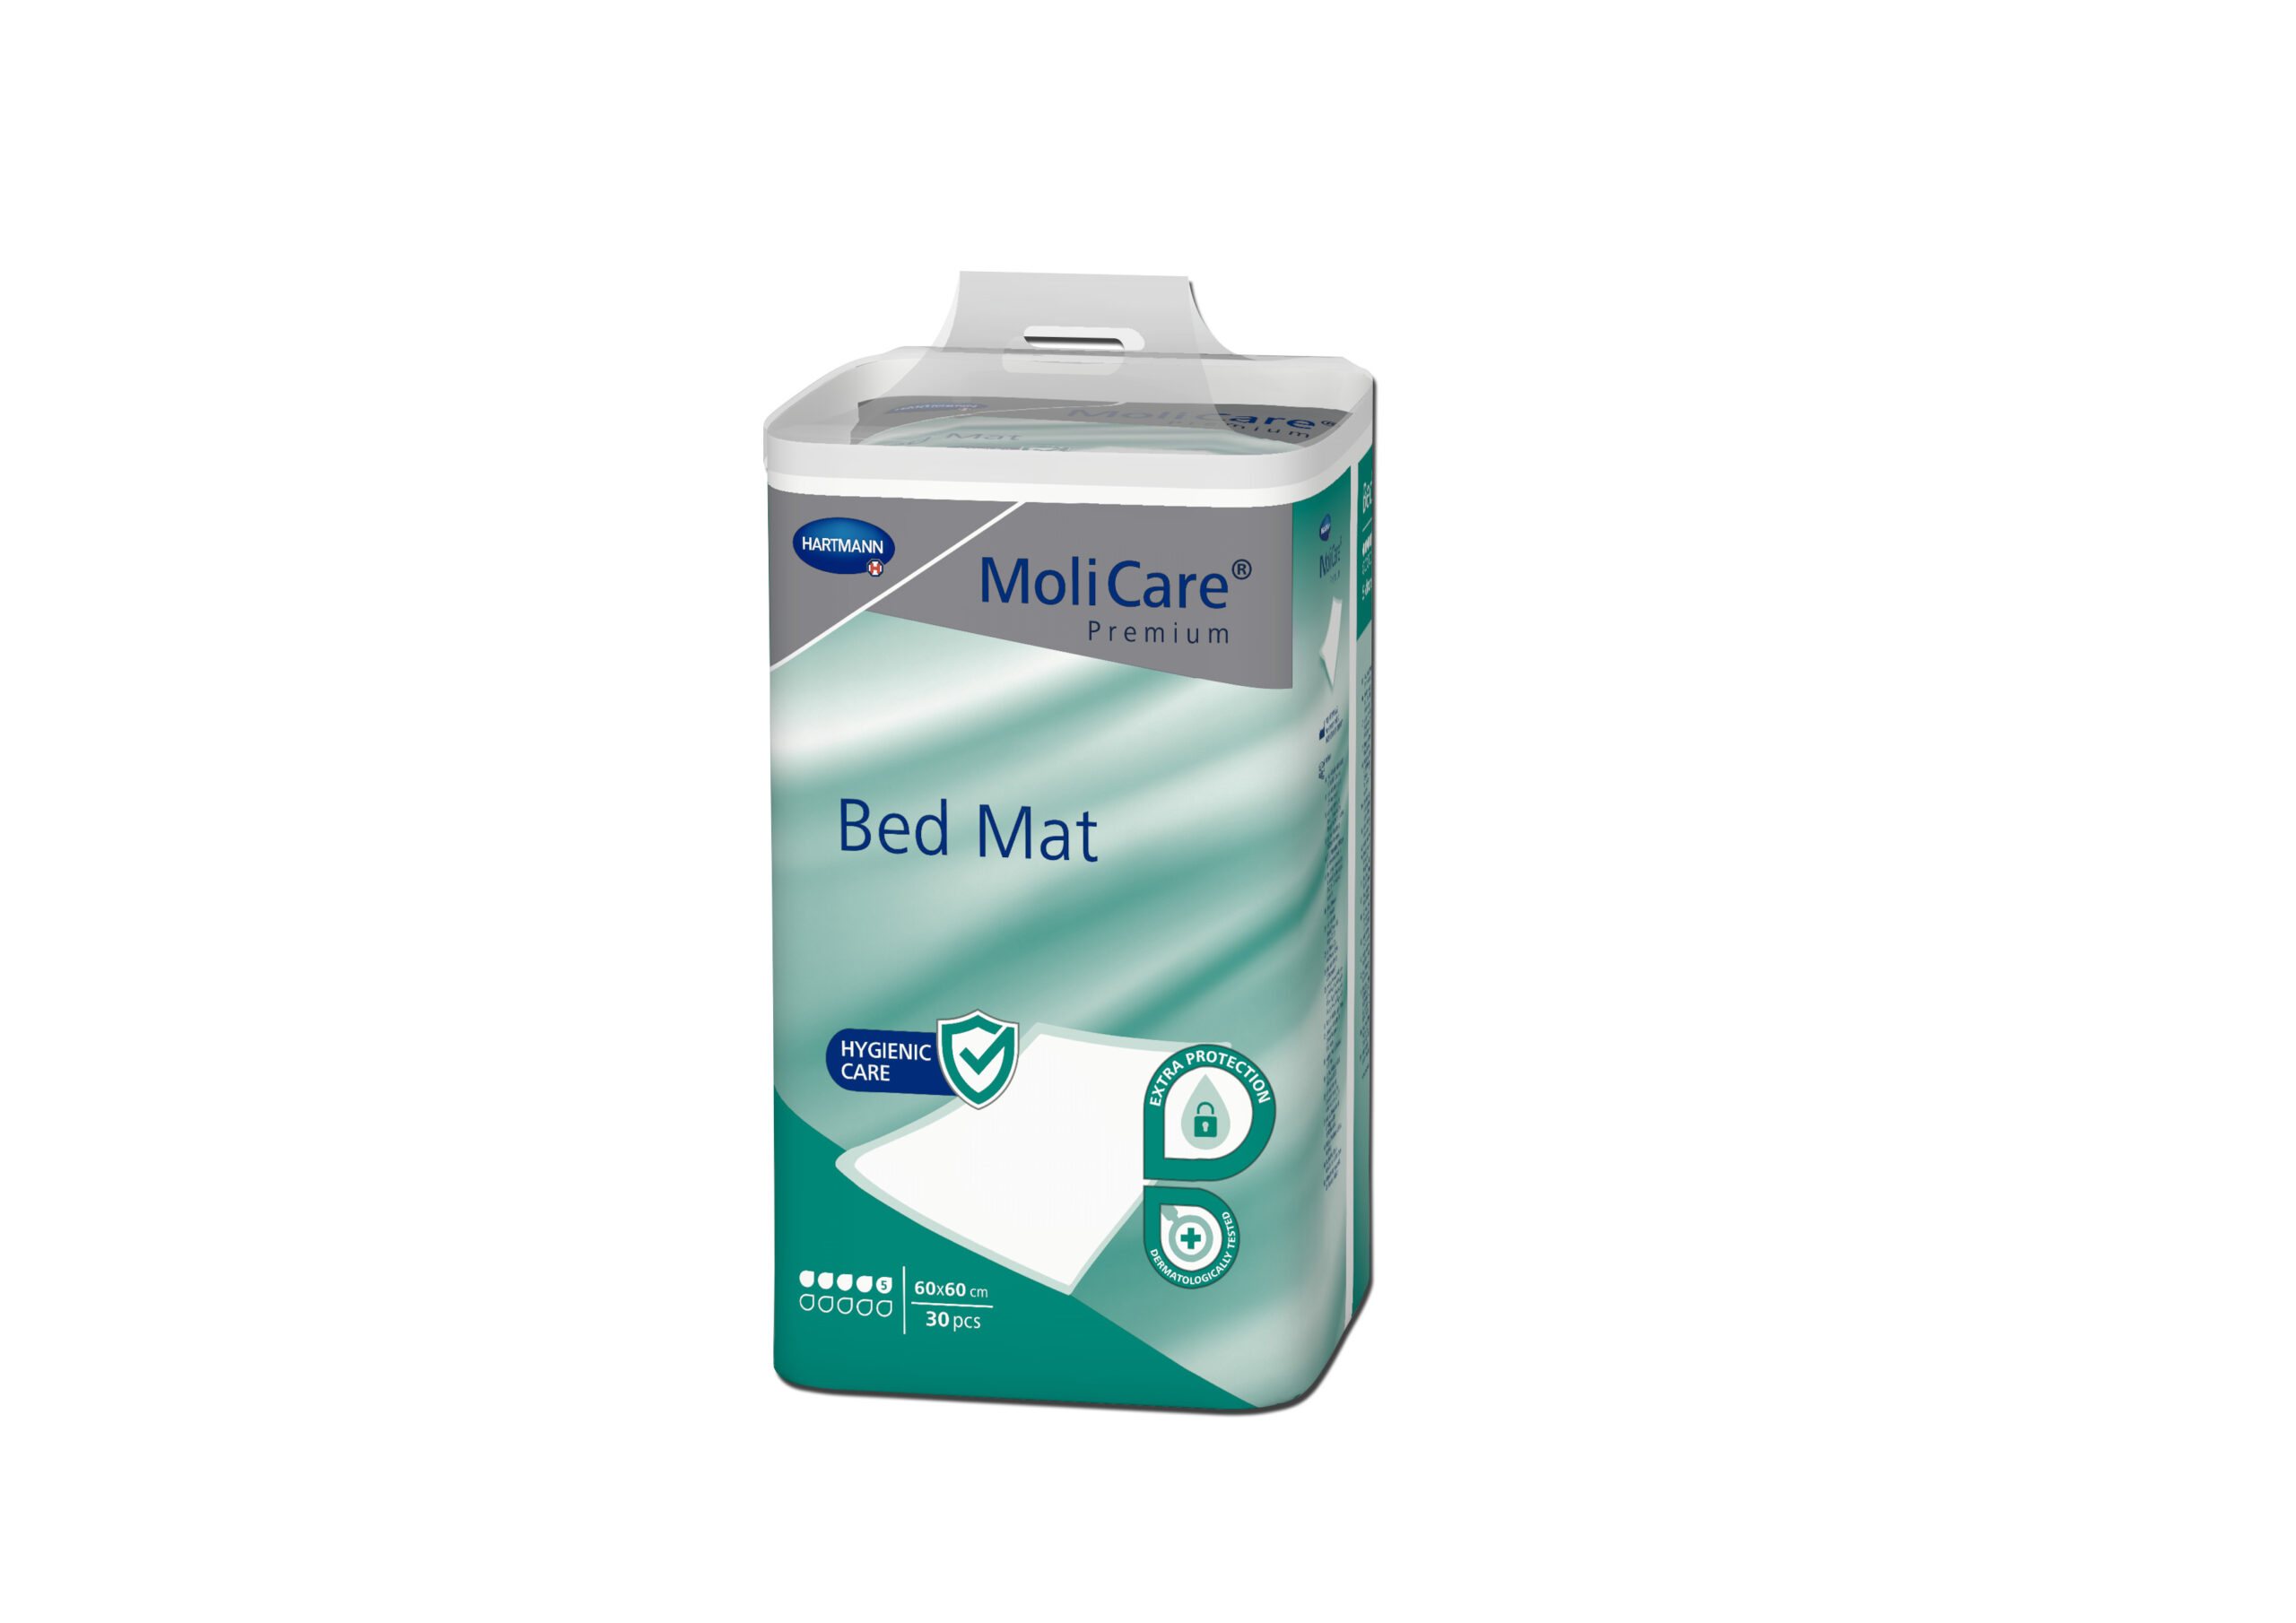 MoliCare Premium Bed Mat 5 picaturi 60x60cm 1